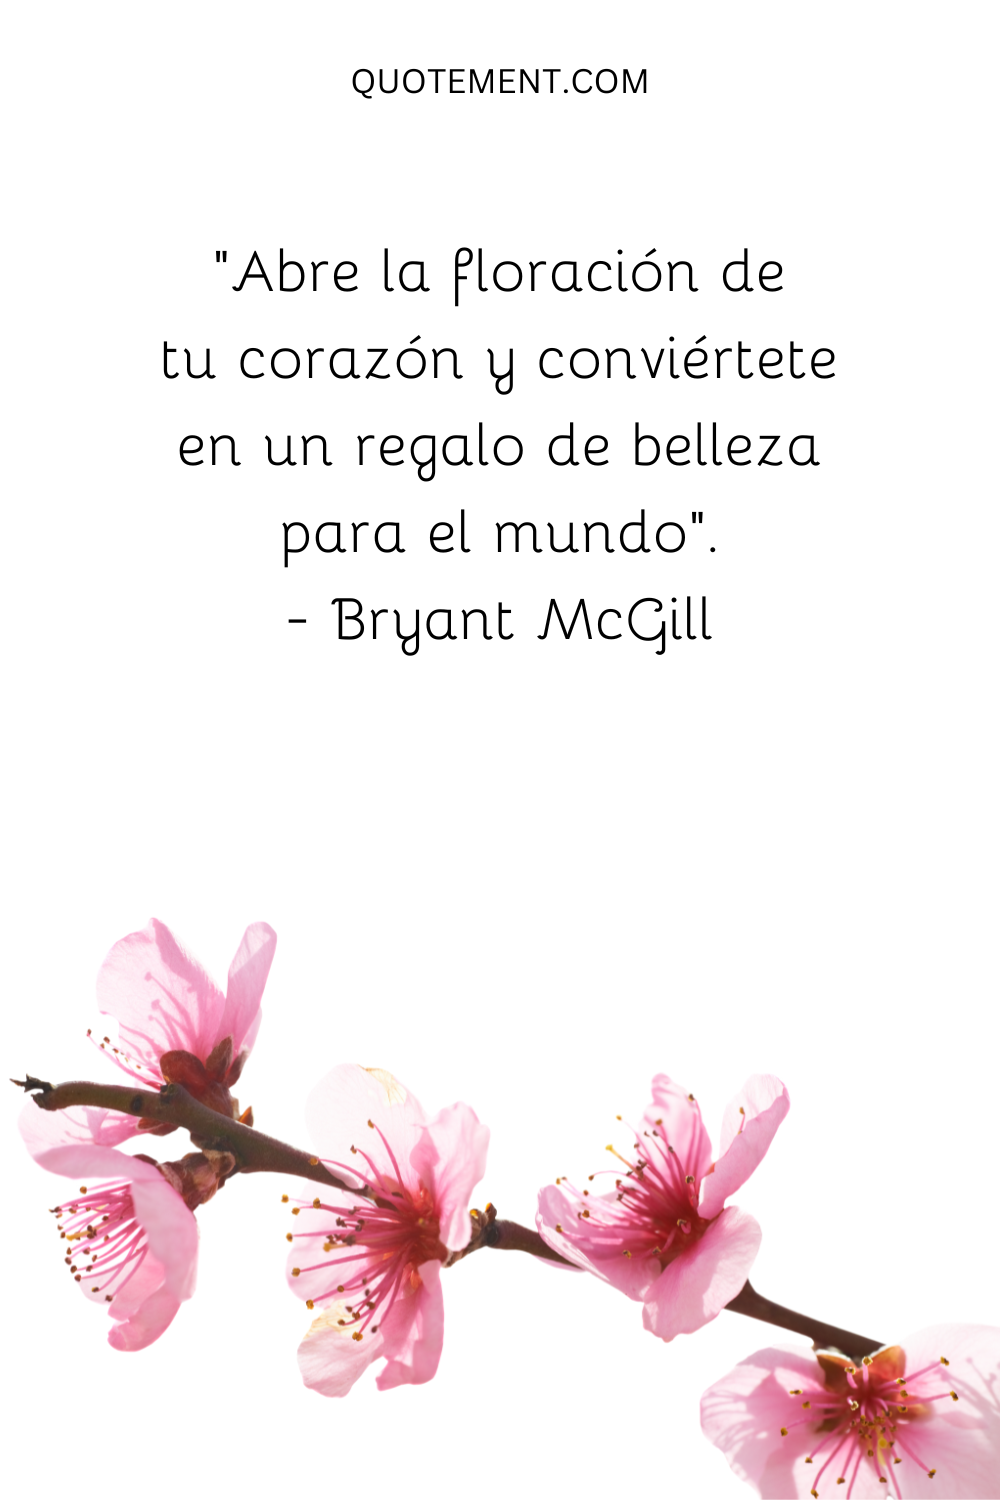 "Abre la flor de tu corazón y conviértete en un regalo de belleza para el mundo". - Bryant McGill